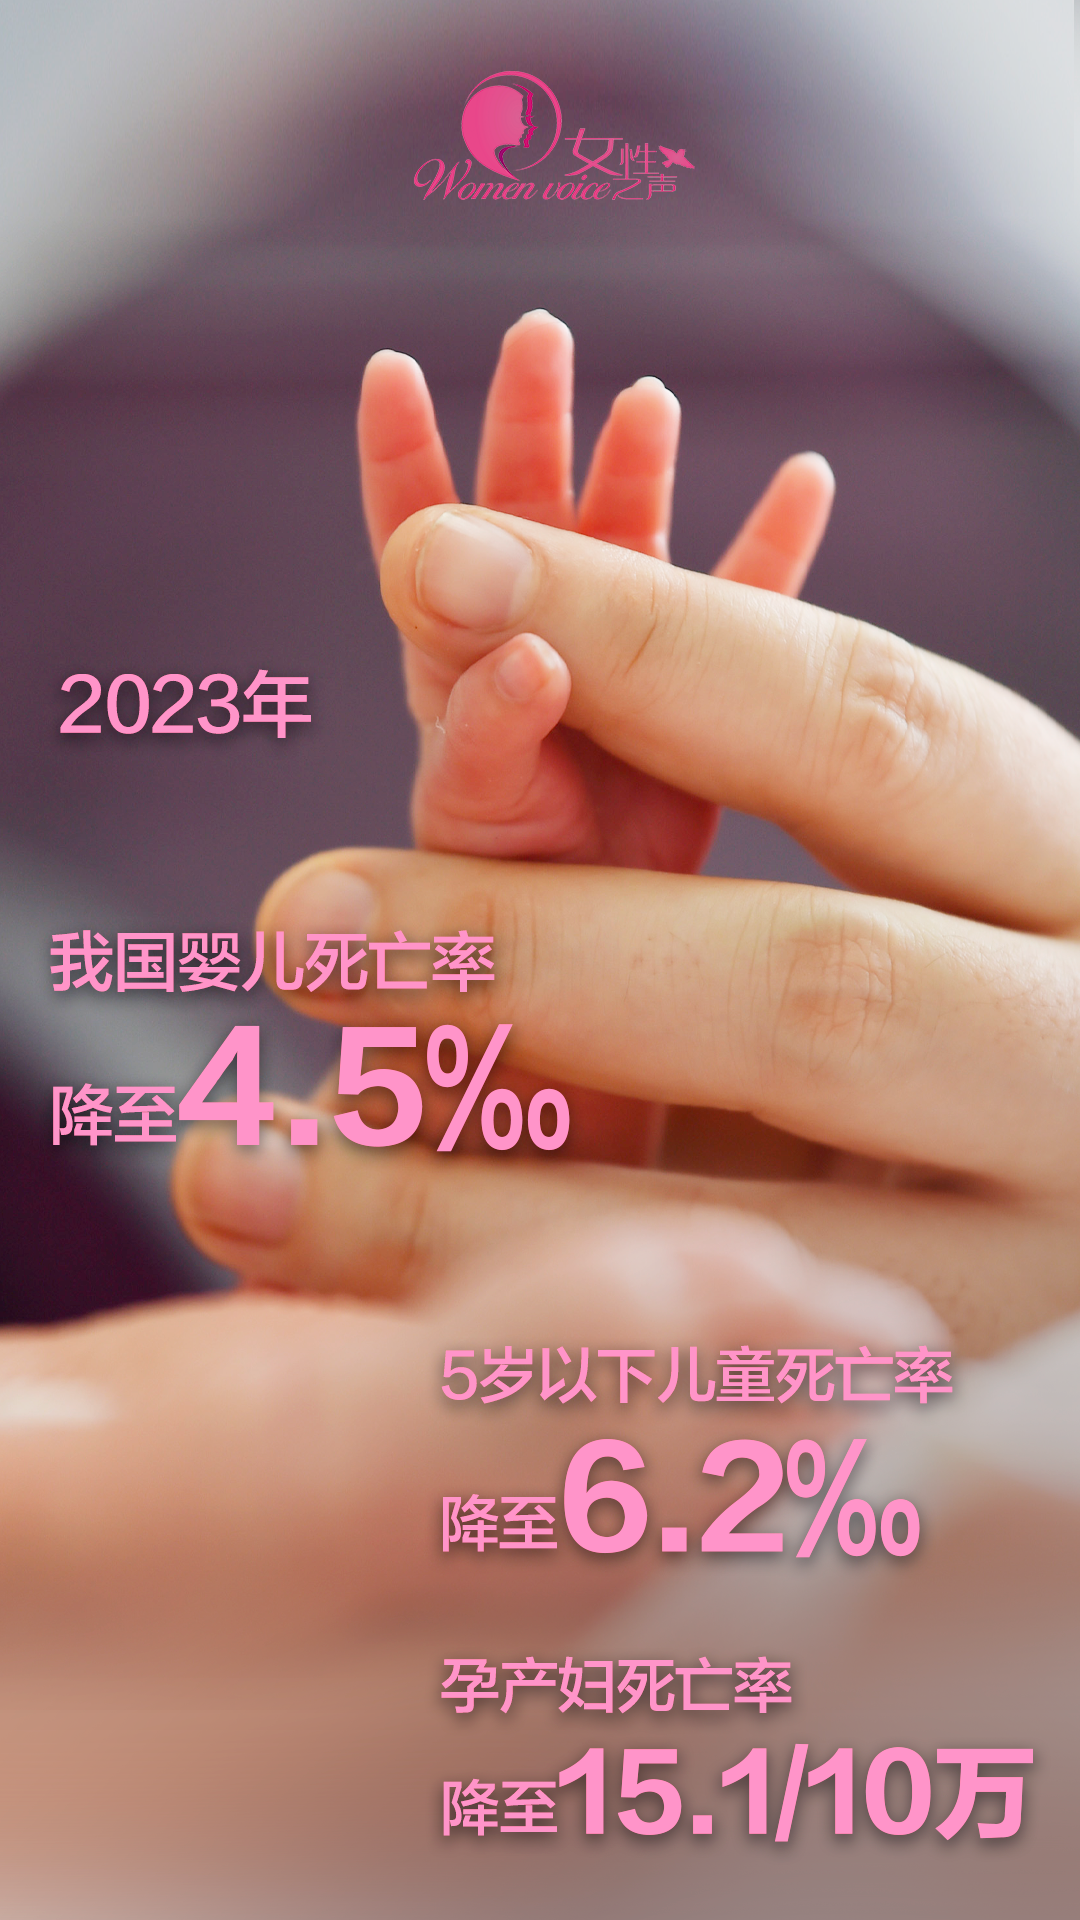 我国婴儿死亡率降至4.5‰ 孕产妇死亡率降至15.1/10万